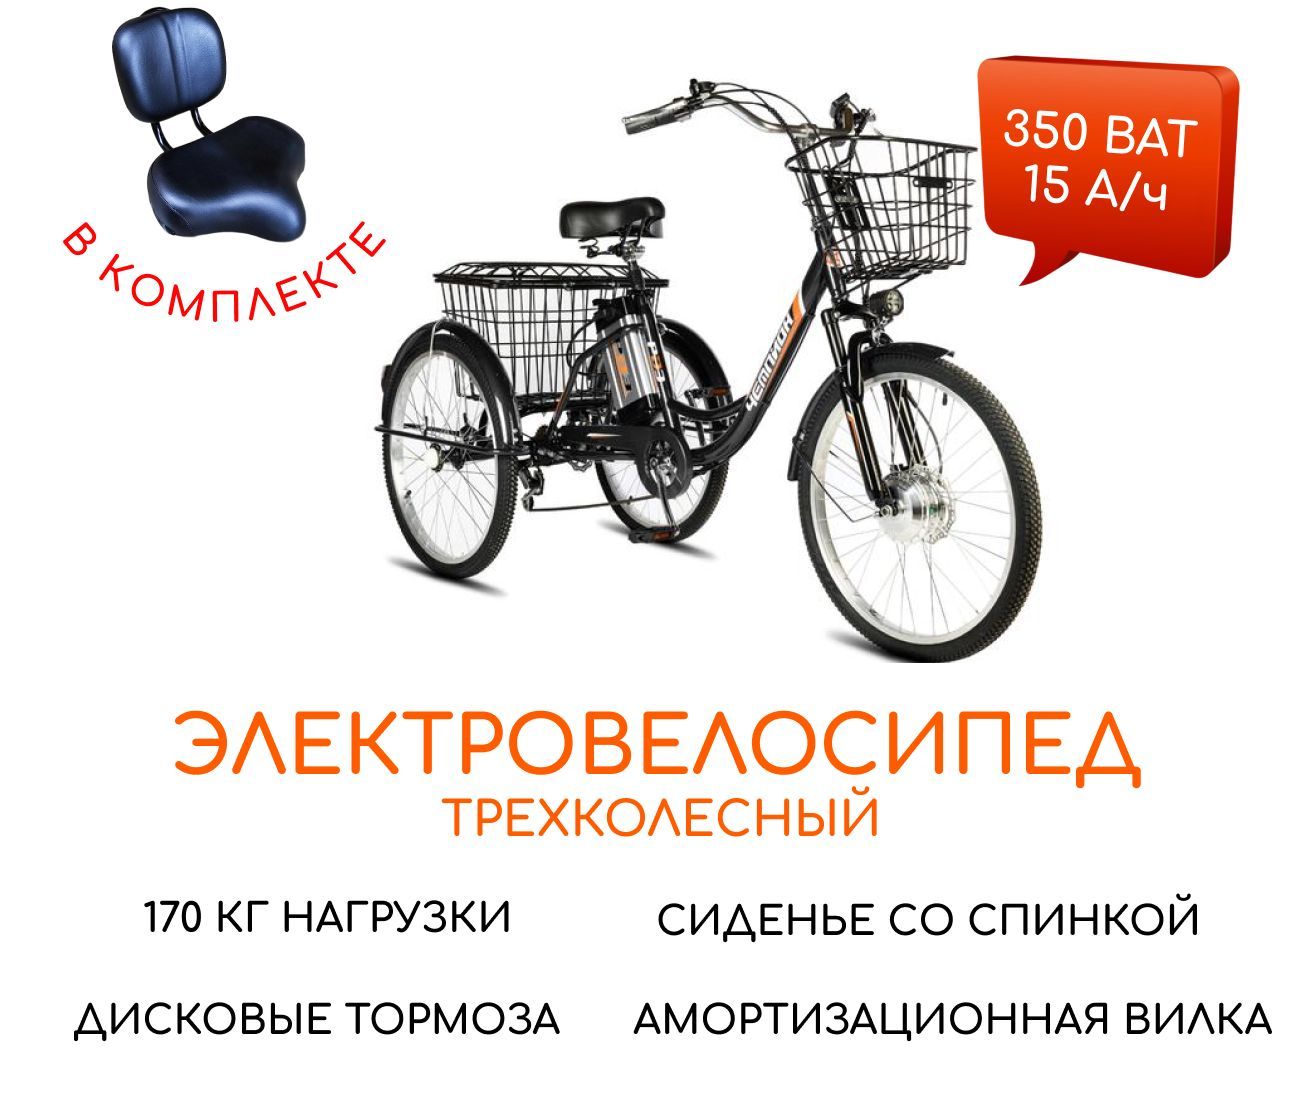 Электровелосипедтрехколесныйдлявзрослых35015(диван)РВЗЧемпиончерный